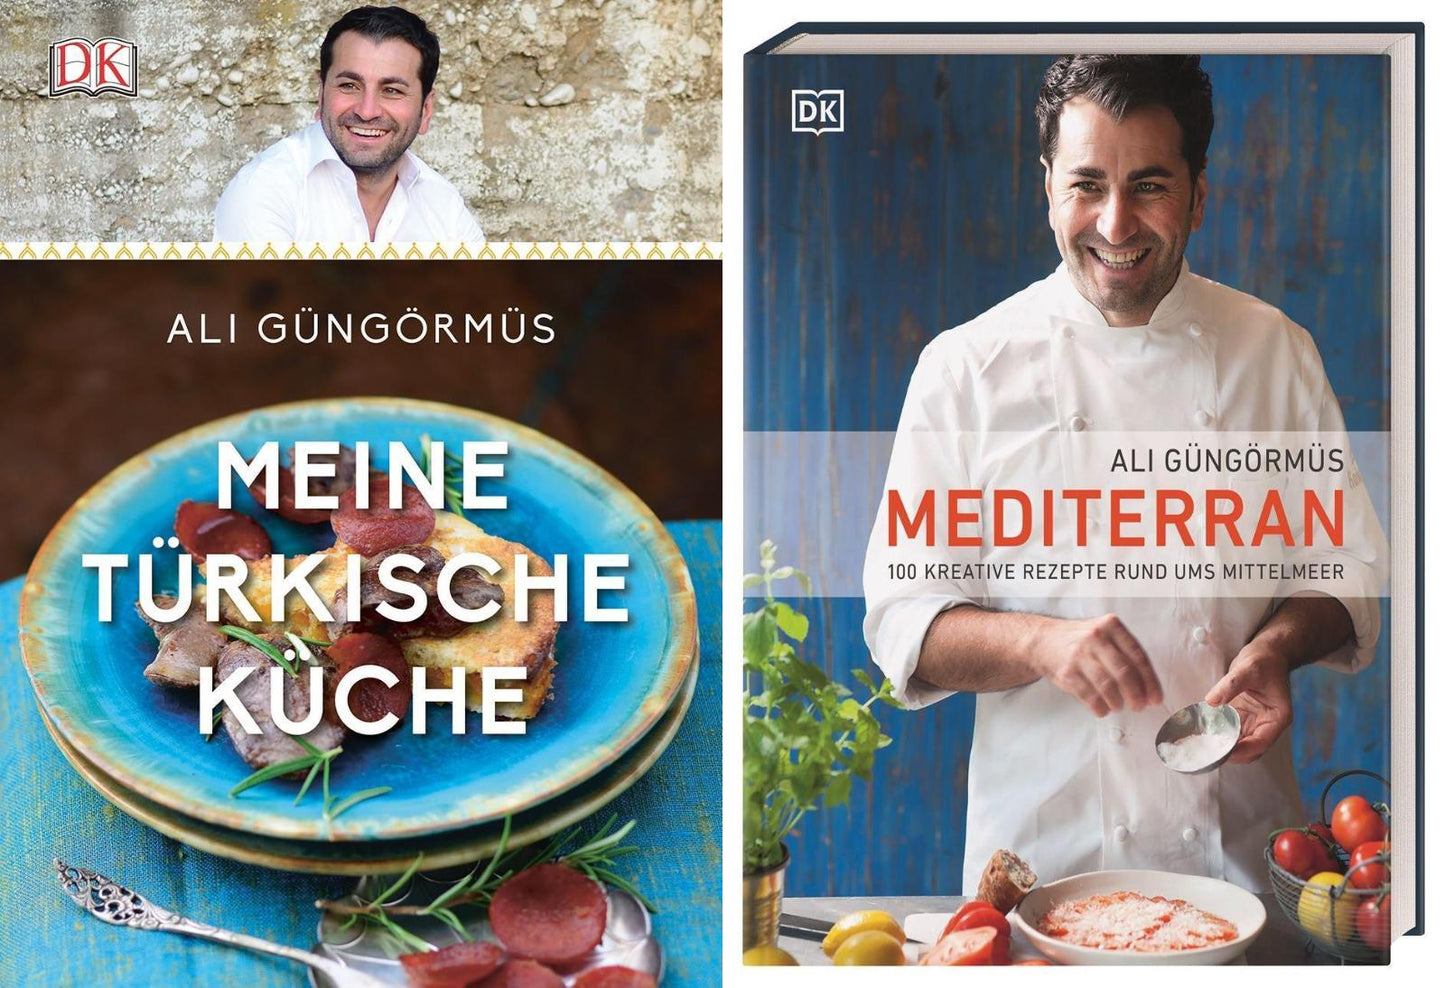 Meine türkische Küche + Mediterran: 2 Kochbücher von Ali Güngörmüs im Set + 1 exklusives Postkartenset